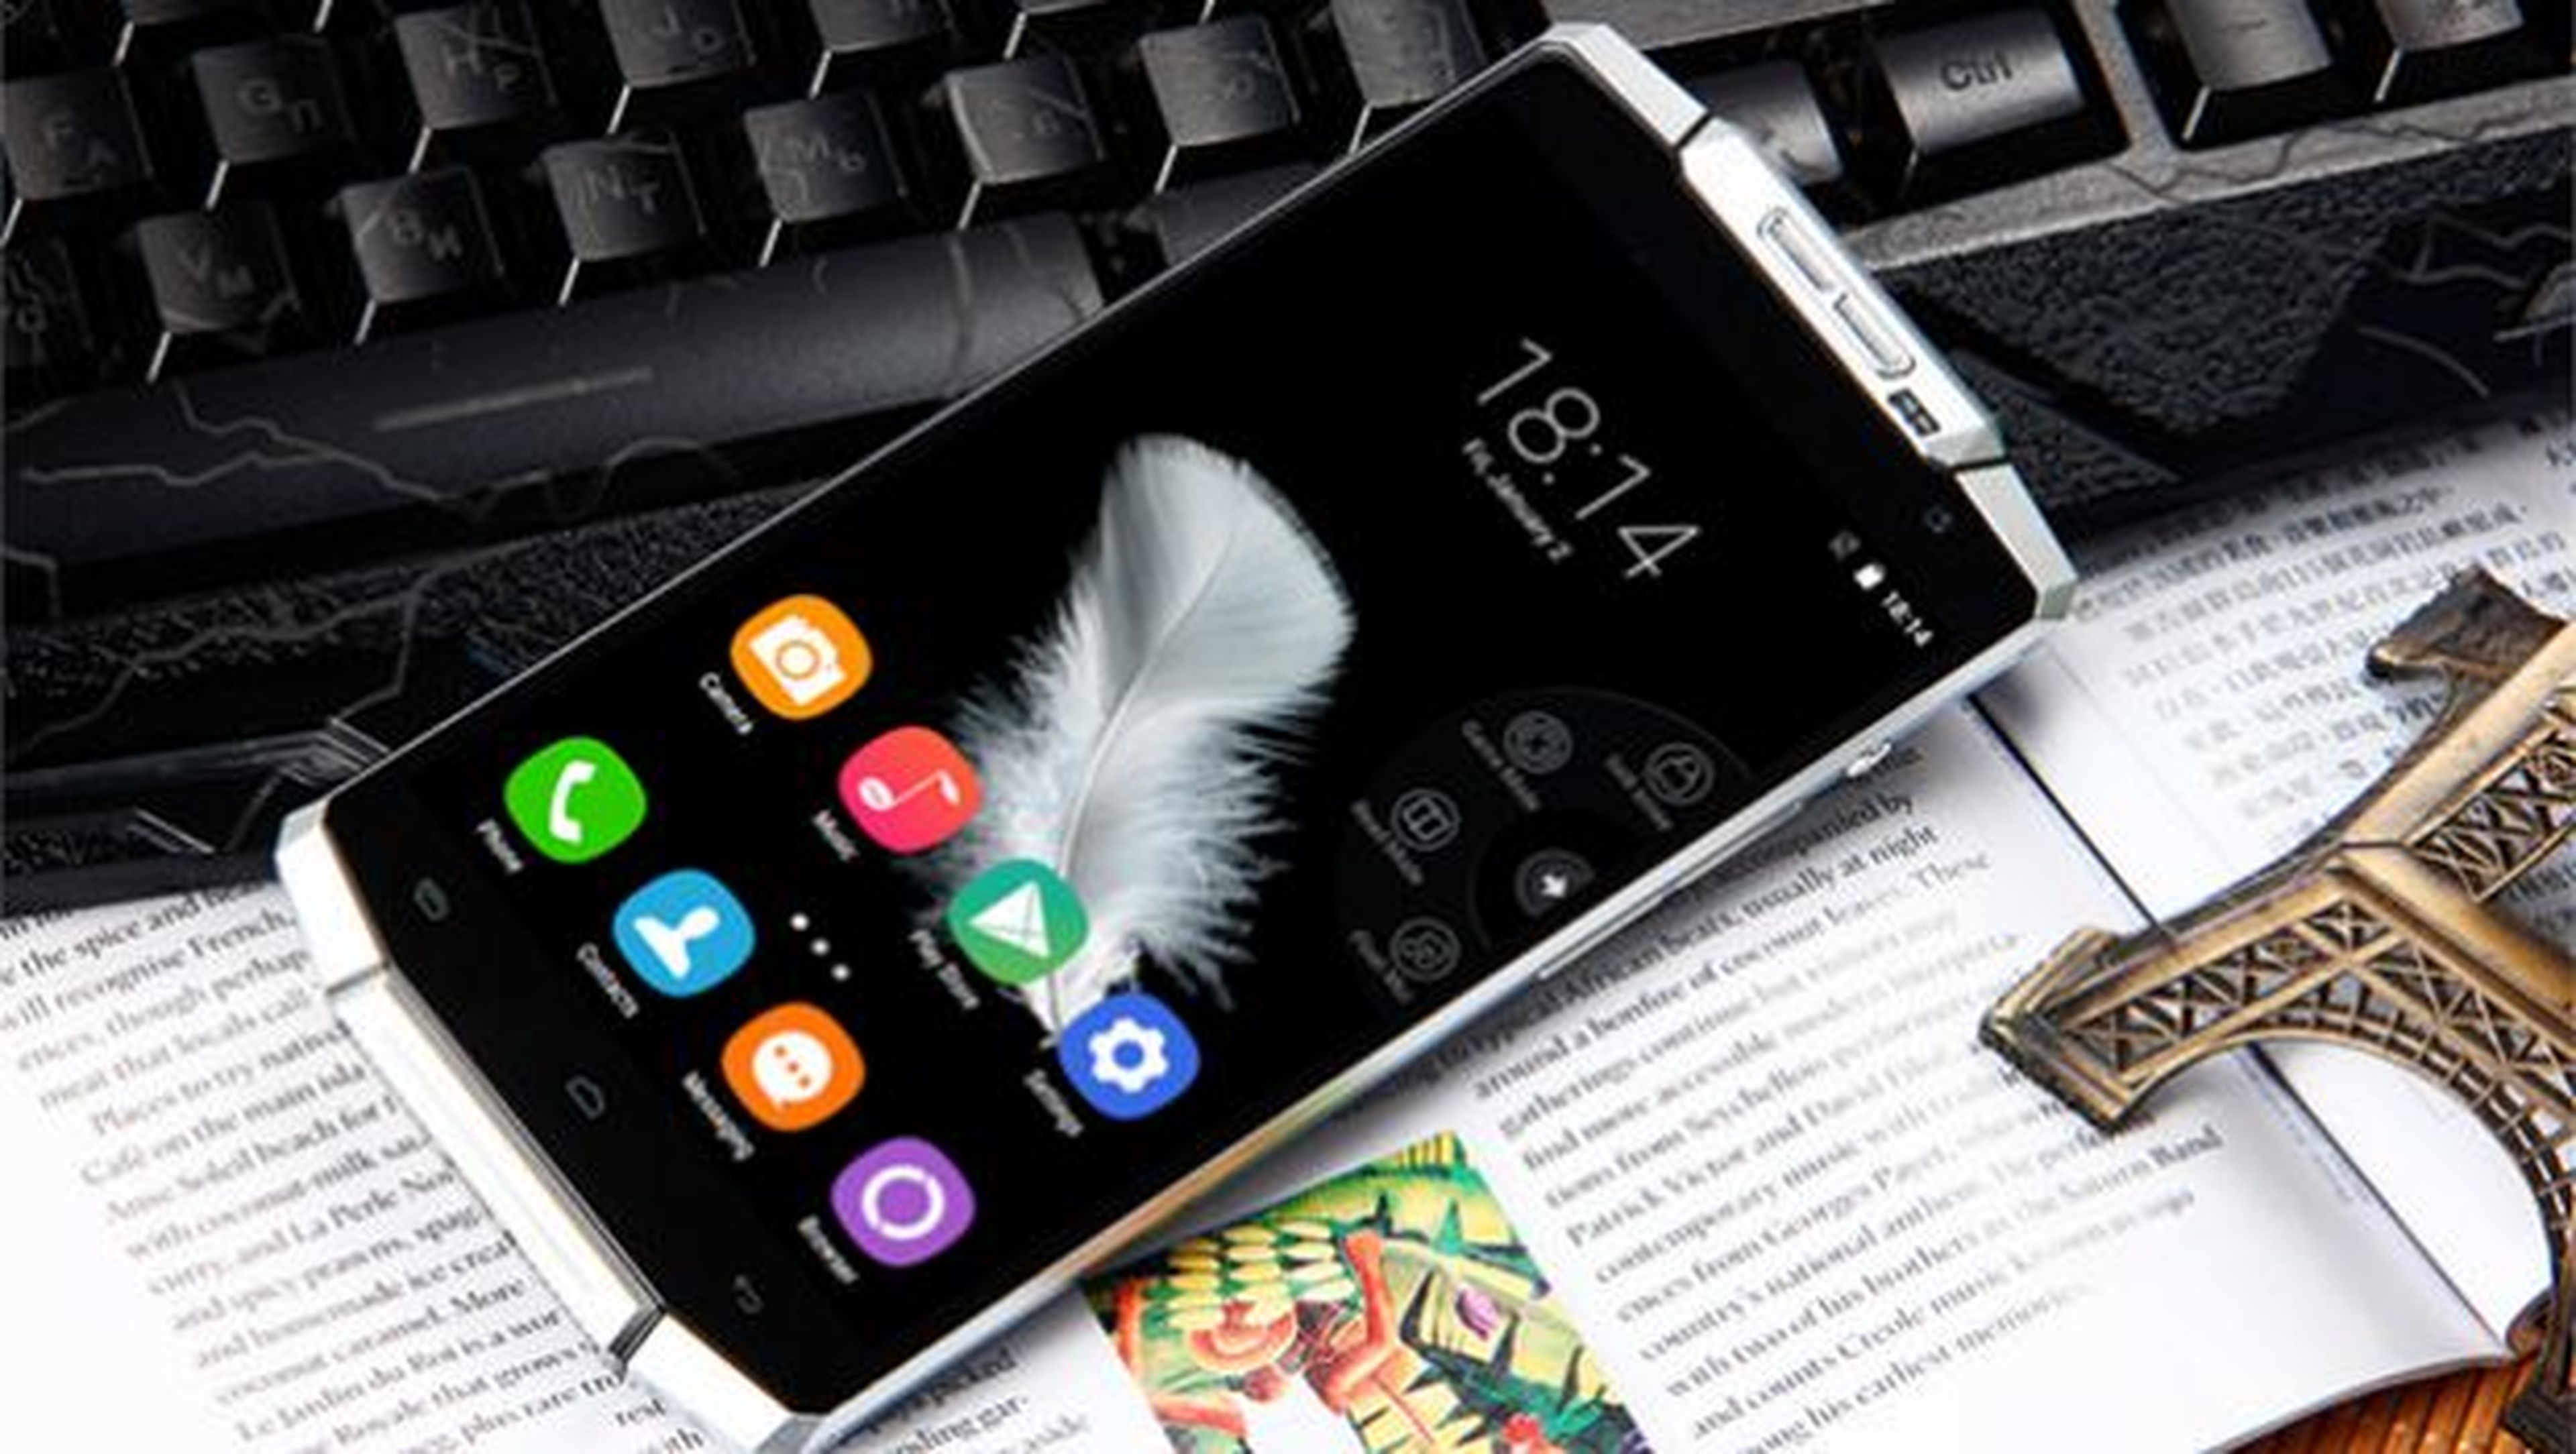 La tienda online Dealextreme.com ofrece un precio inmejorable para el que, probablemente, sea el smartphone chino con mayor batería del panorama actual.